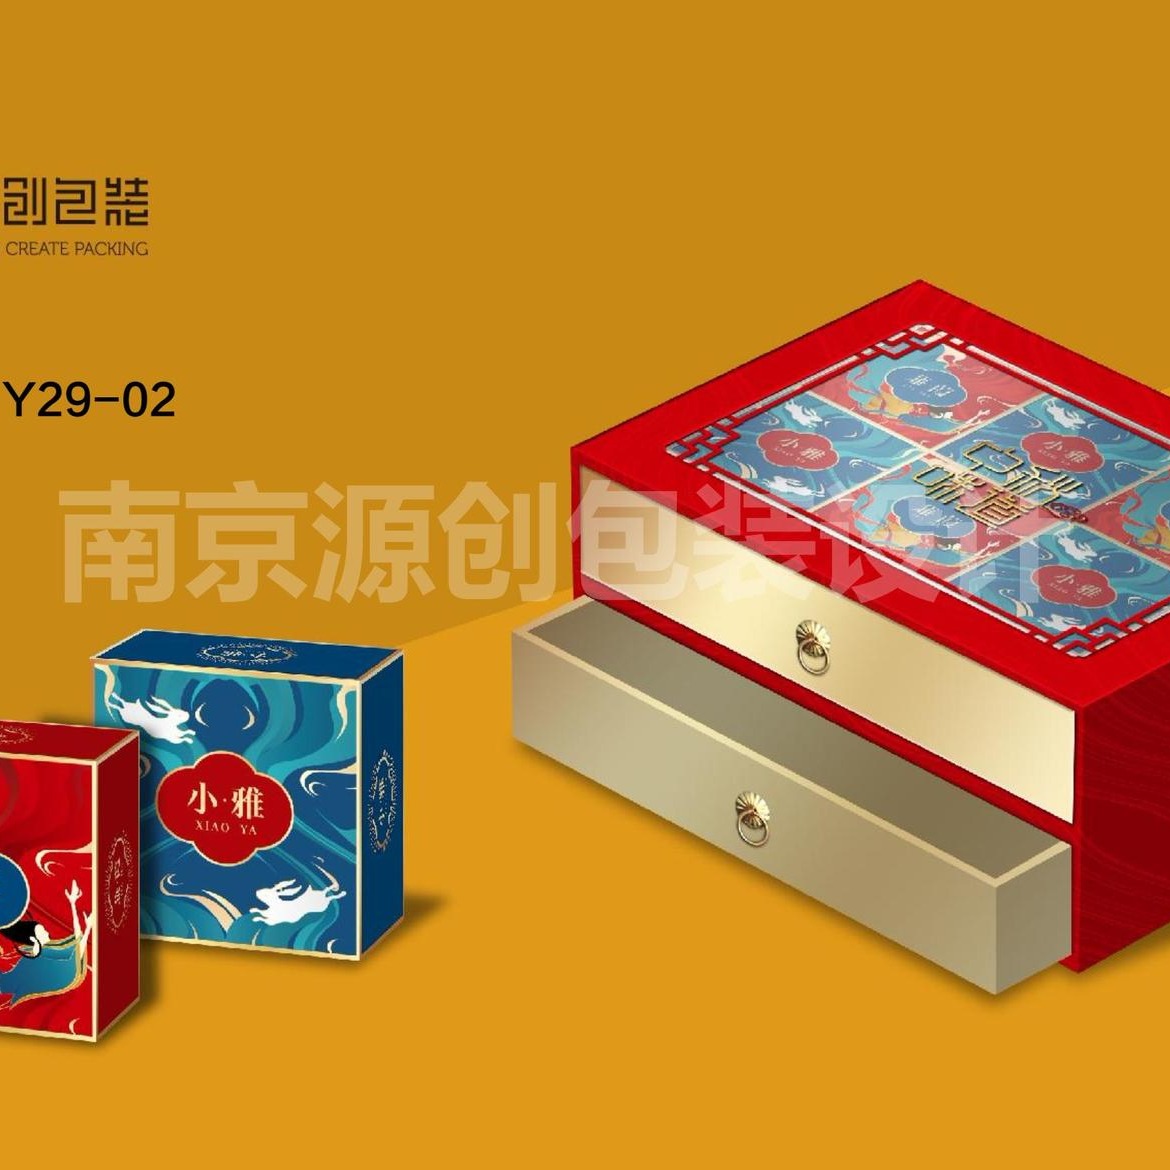 月饼包装盒定制 设计制作月饼盒 礼品盒生产制作 源创包装 免费设计打样